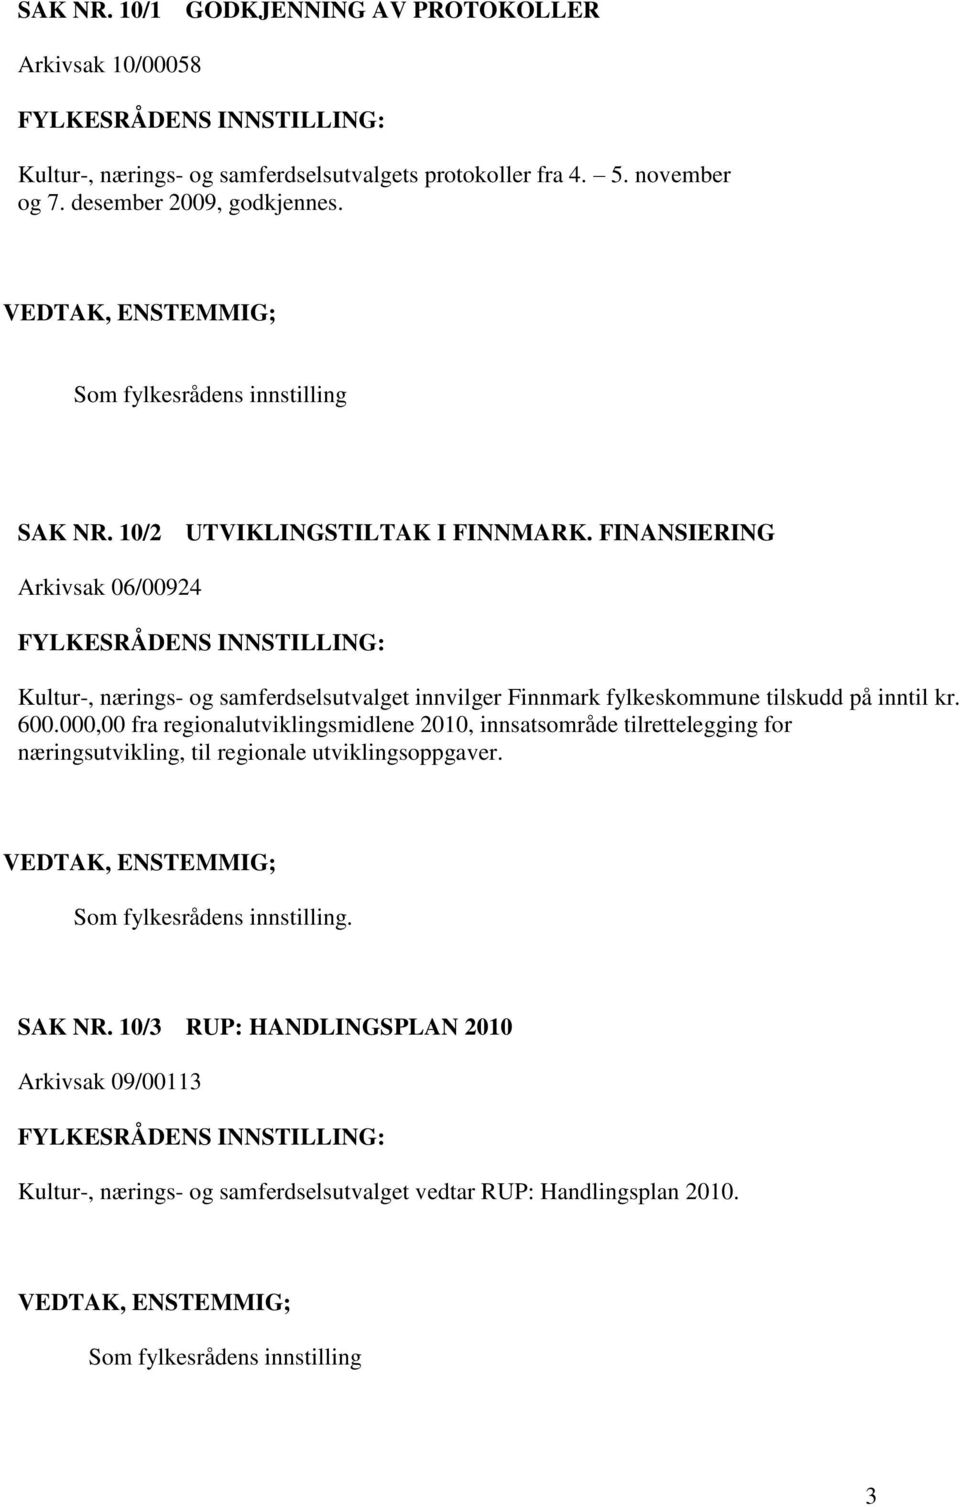 FINANSIERING Arkivsak 06/00924 Kultur-, nærings- og samferdselsutvalget innvilger Finnmark fylkeskommune tilskudd på inntil kr. 600.